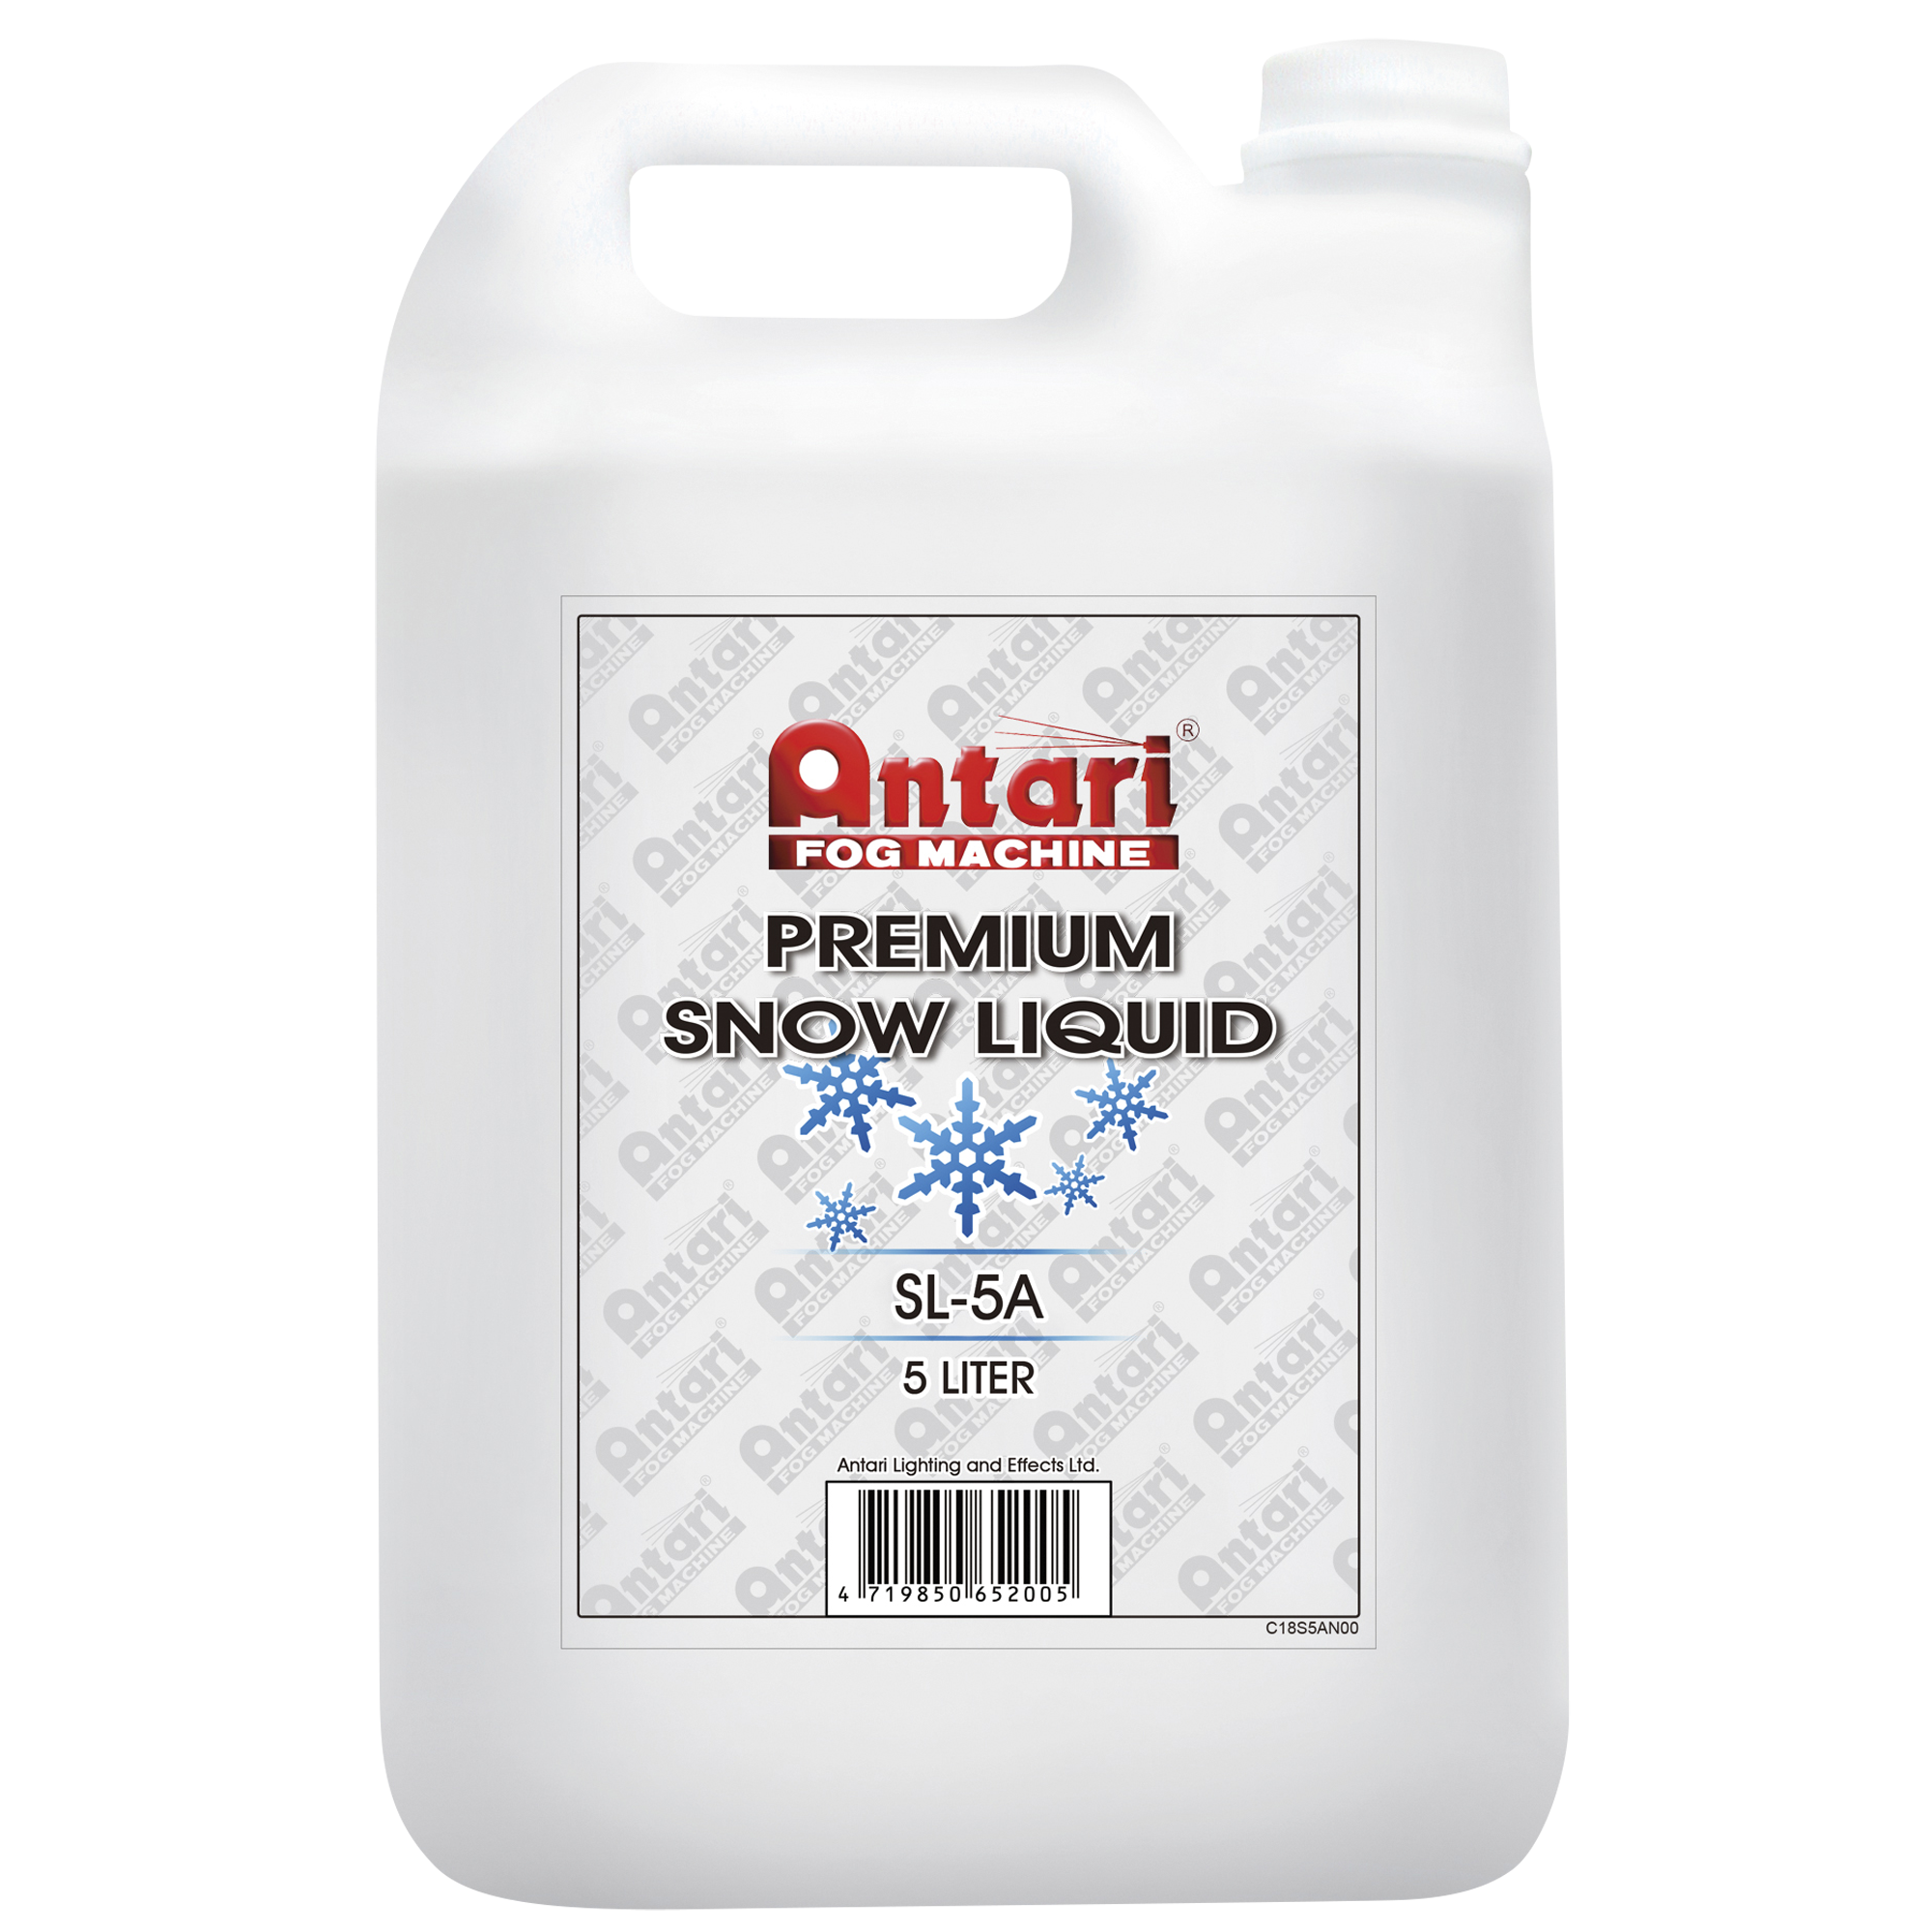 Antari Snow Liquid SL-5A 5 Liter - premium